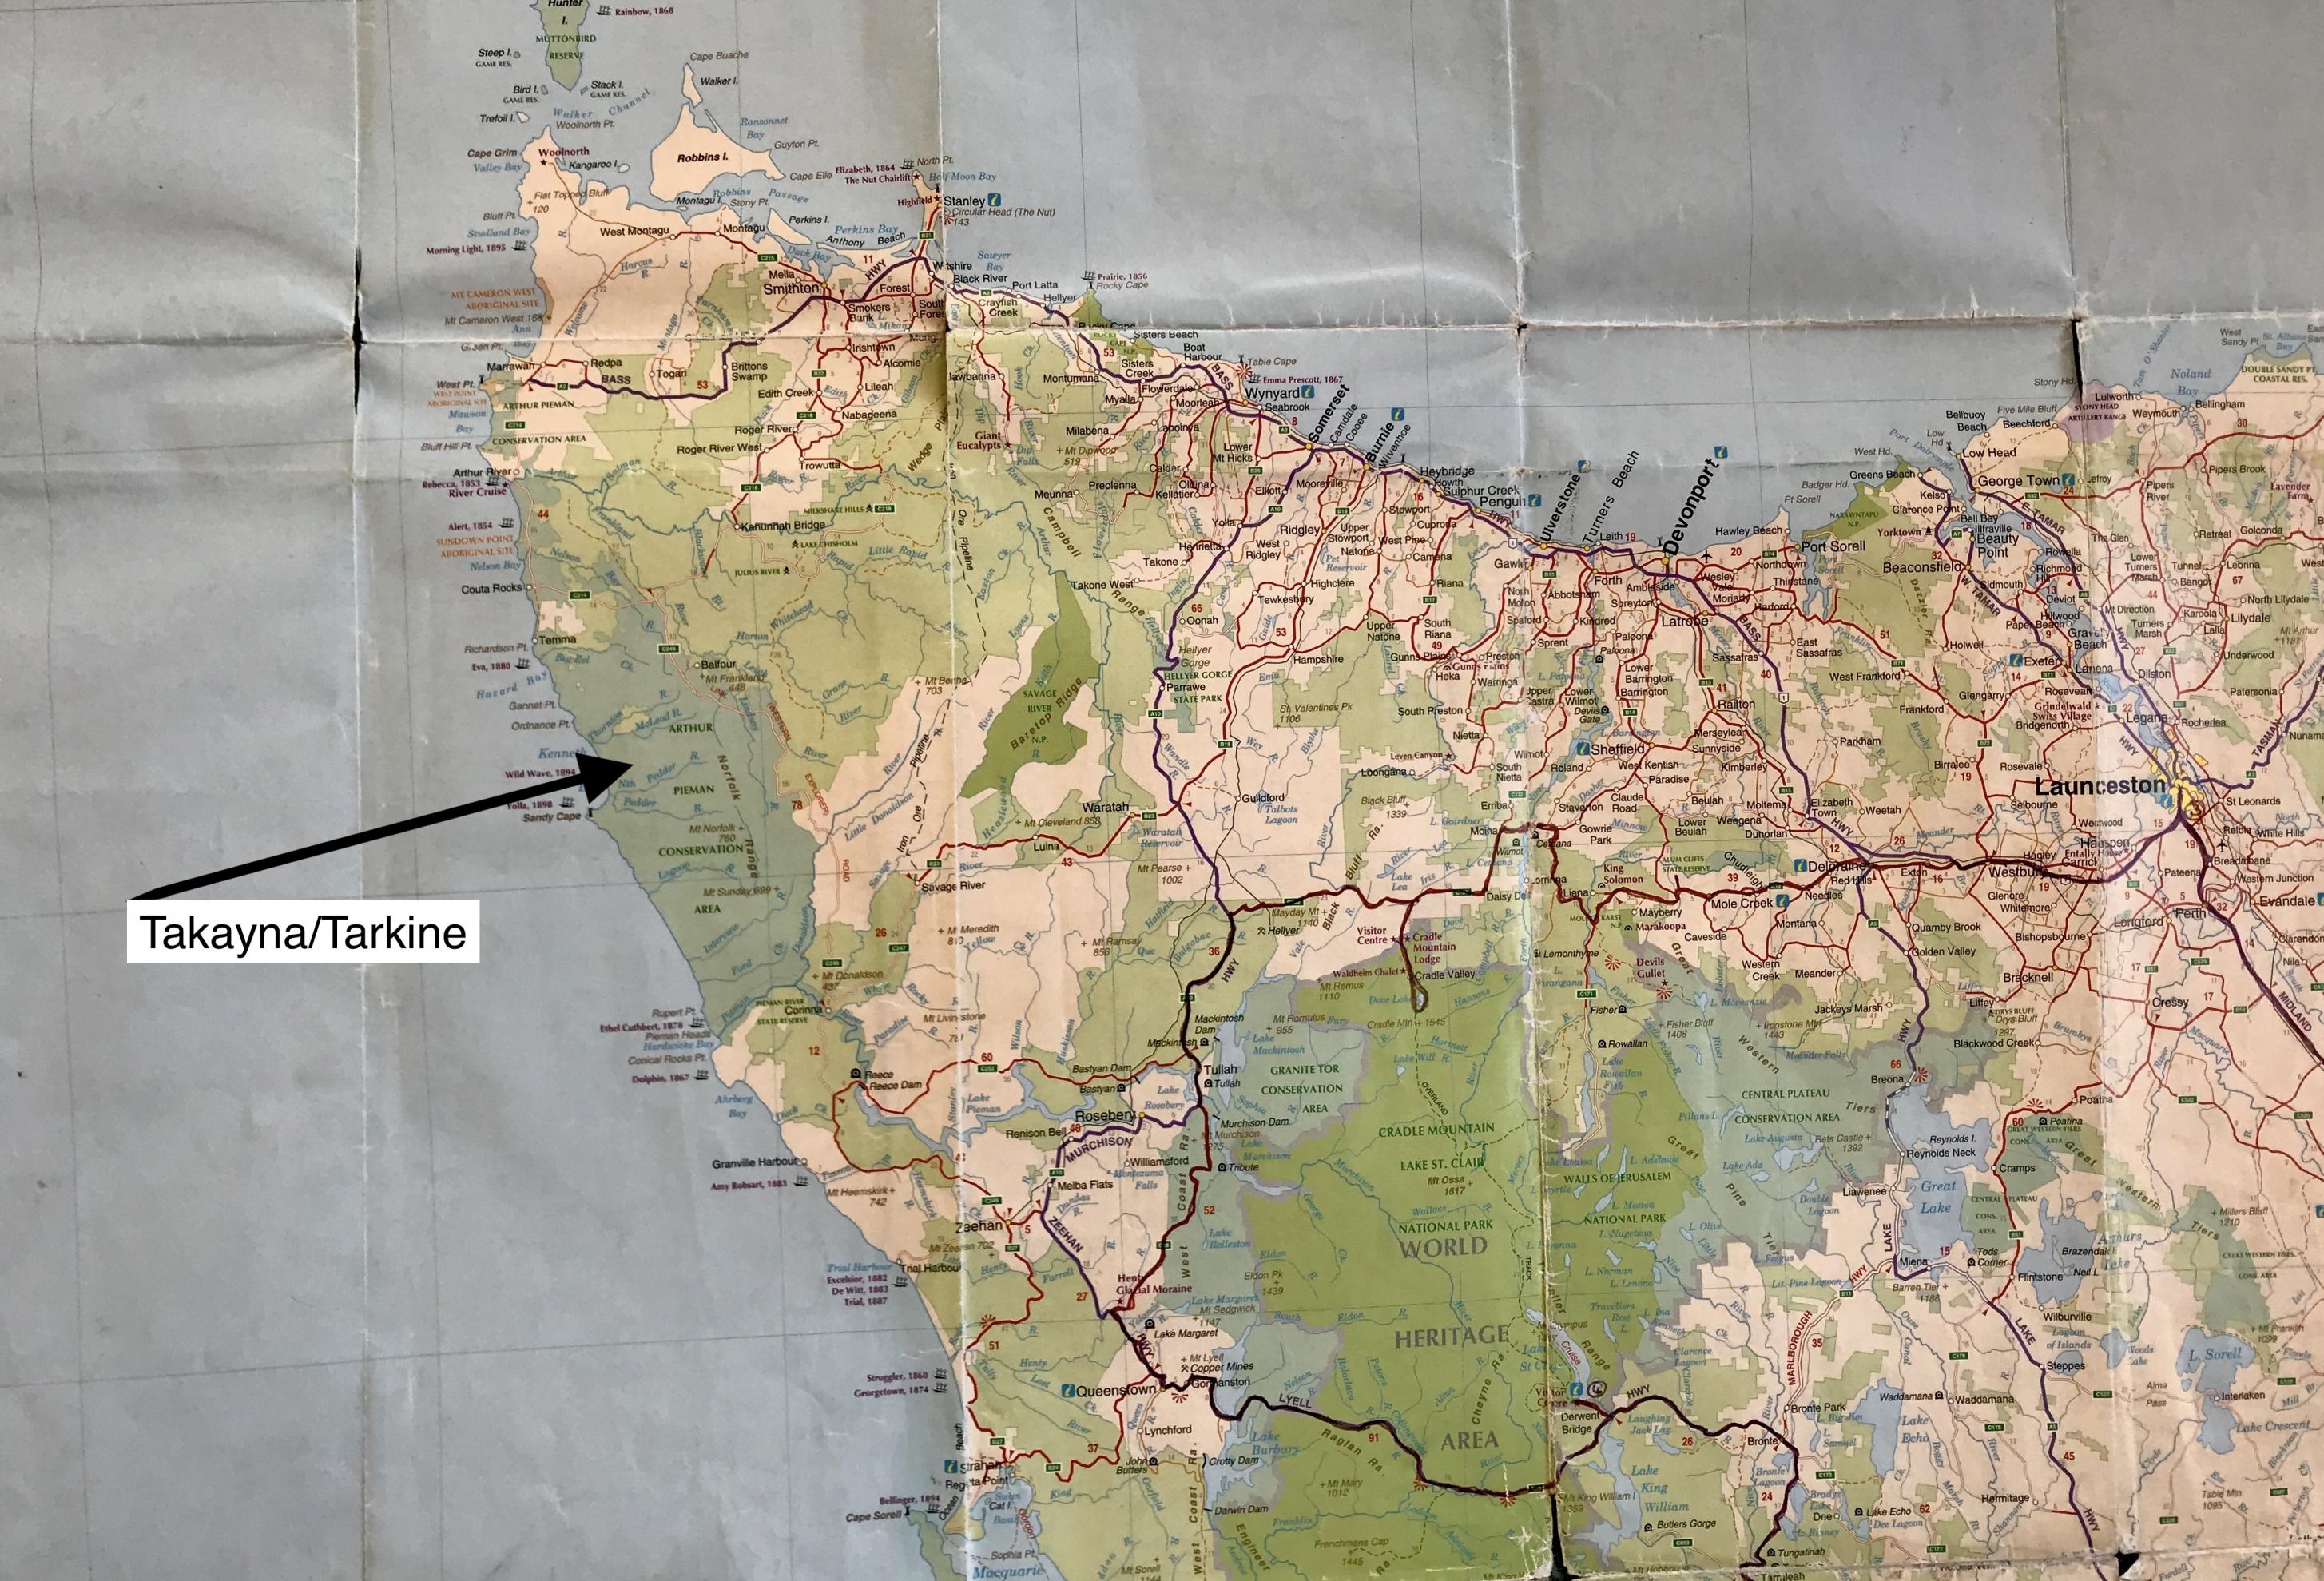 Auf einer Landkarte ist die Tarkine-Region im Nordwesten des Inselbundeststaats Australiens markiert. Es ist ein 447.00 Hektar großes Gebiet mit uraltem Regenwaldbestand.